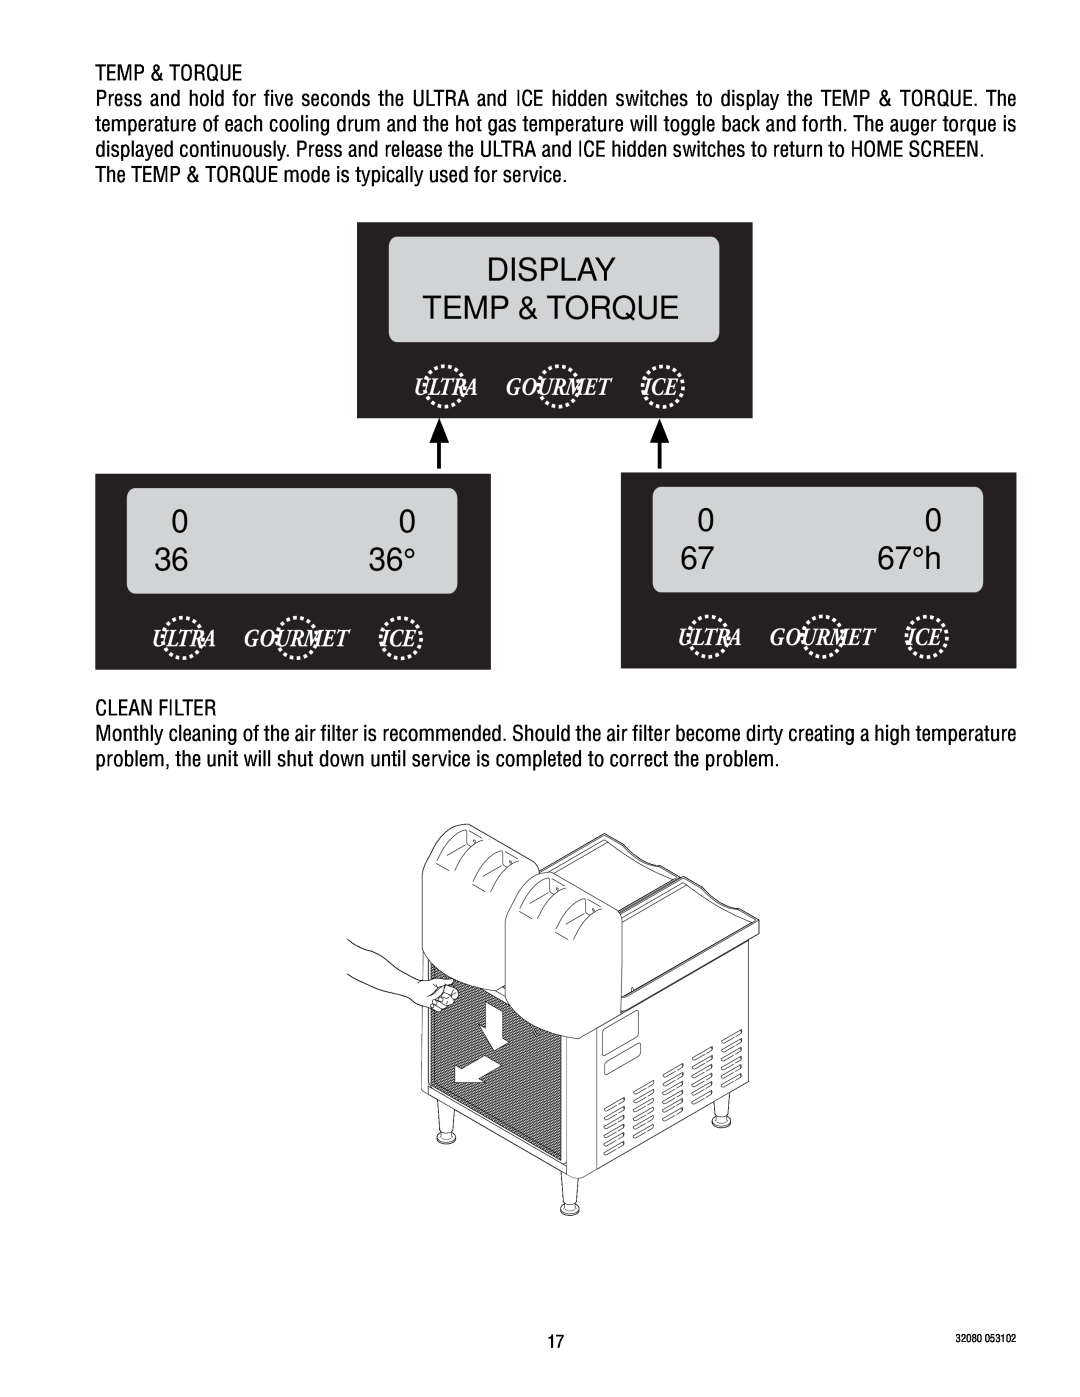 Bunn ULTRA-2 manual Display Temp & Torque, 67 h 